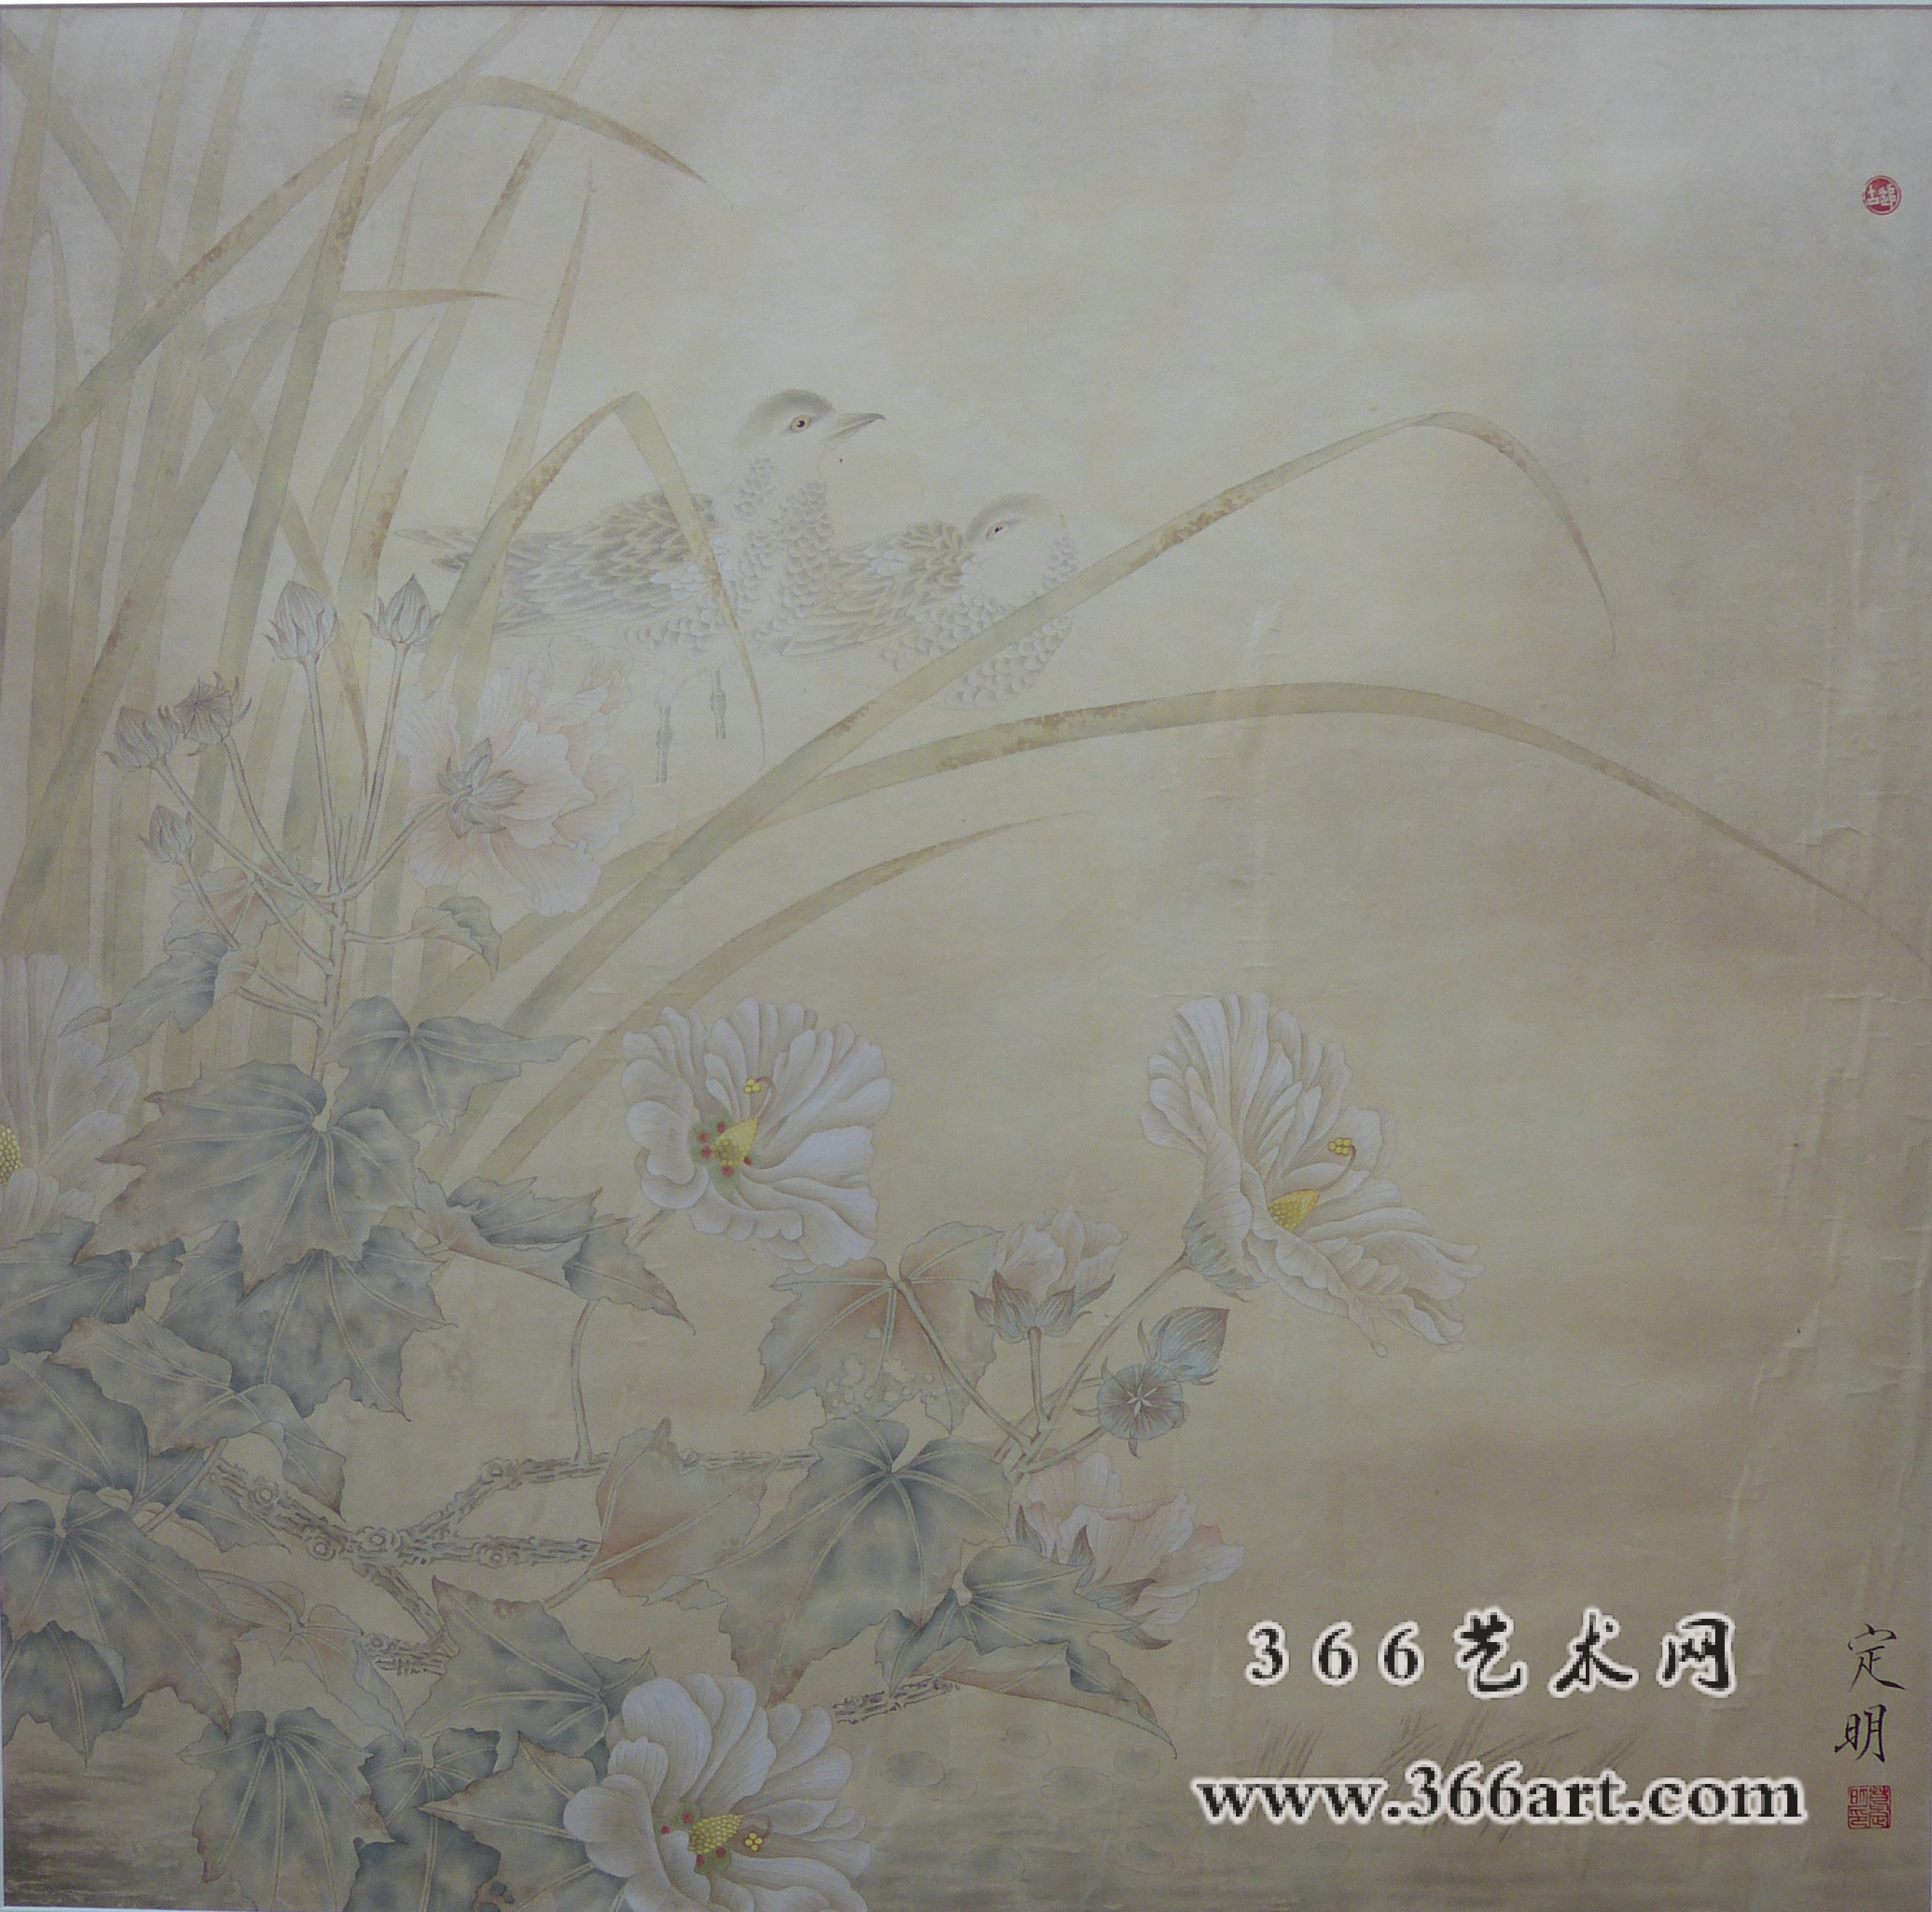 【中国水墨】葛定明 塘边木槿 2014年 65 x 65cm